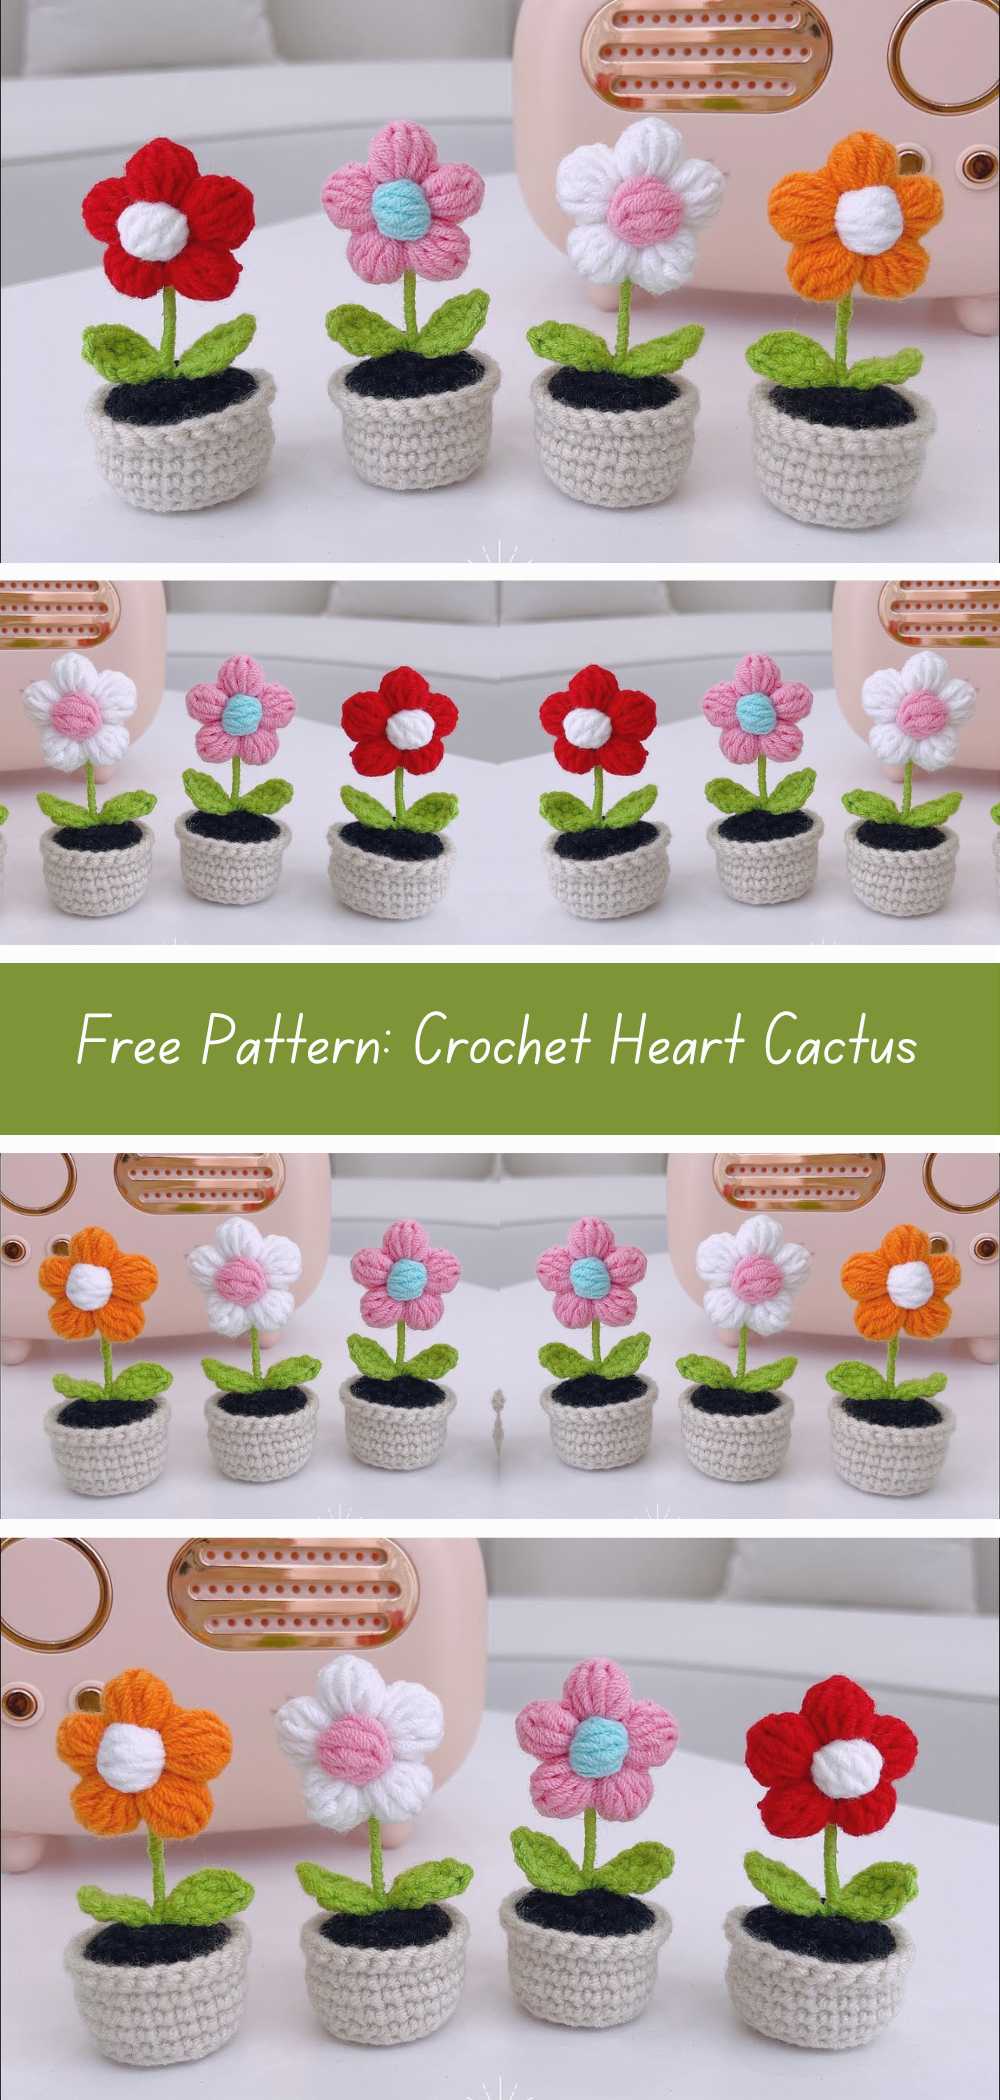 Free Pattern: Crochet Mini Flower Pots - Create charming crochet mini pots with this free pattern